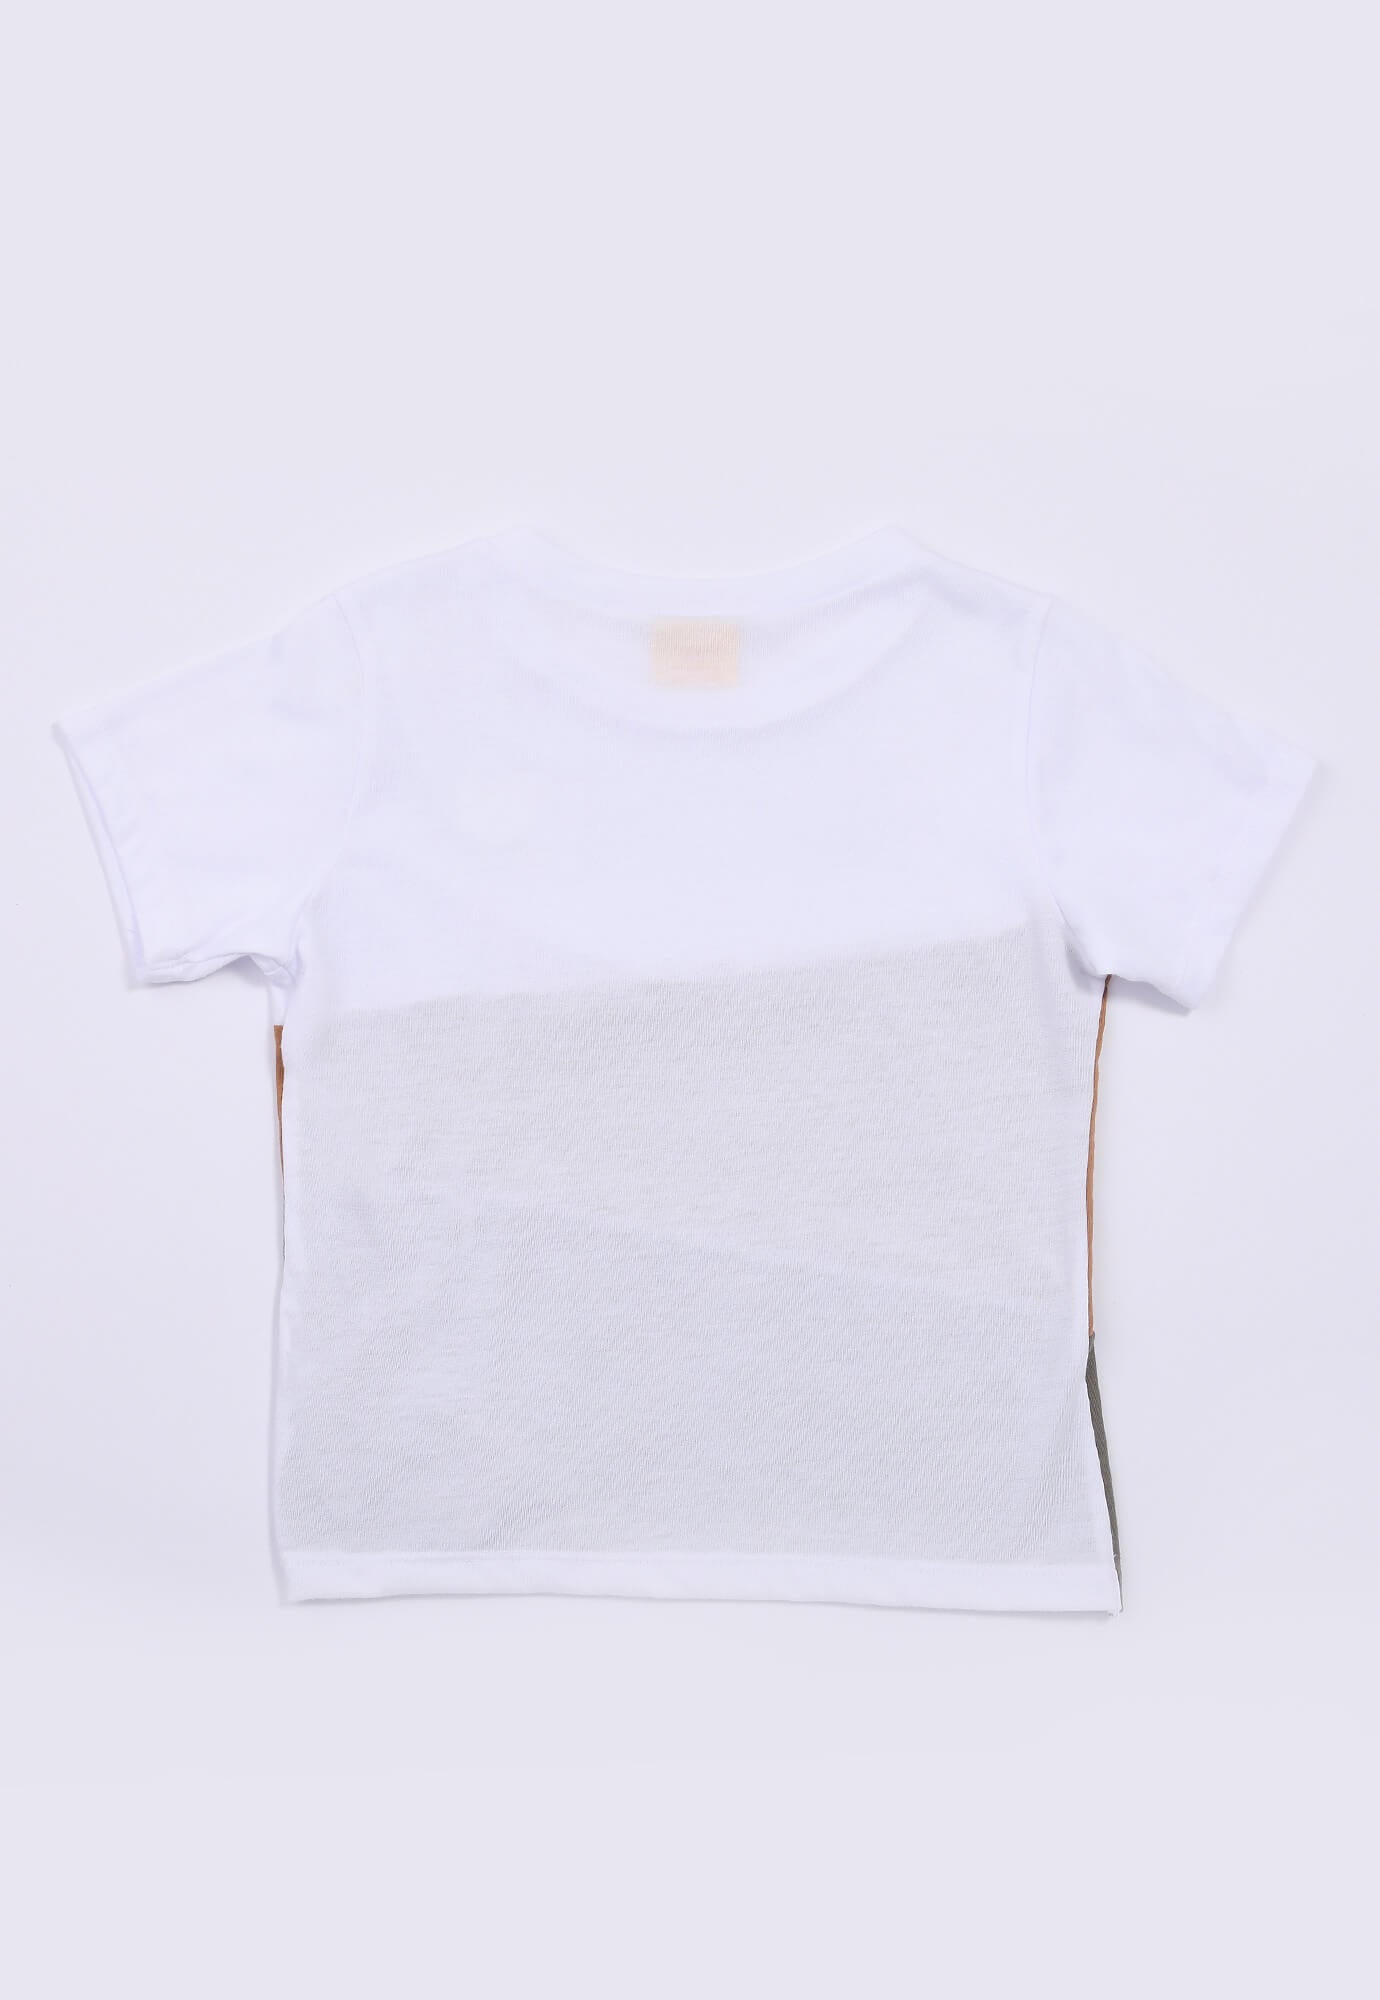 Camiseta blanca en bloques para bebé niño